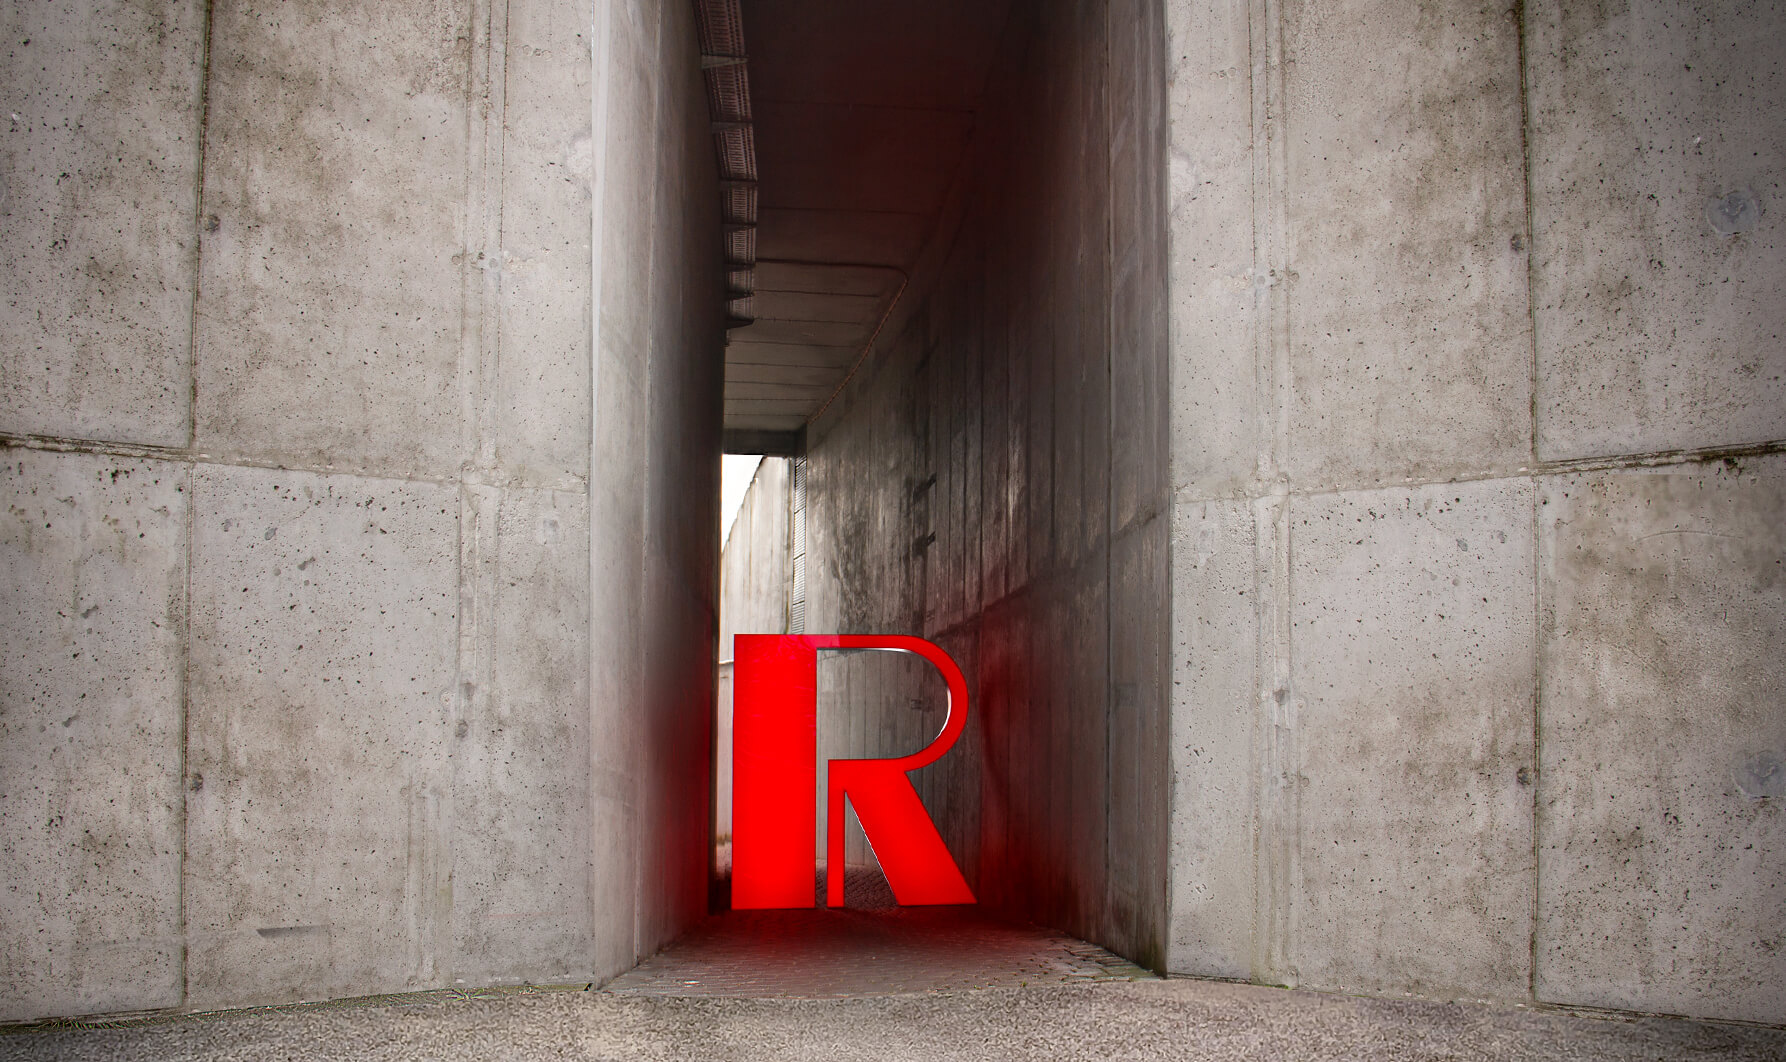 Czerwona litera R - Wielkoformatowa litera R w kolorze czerwonym na betonowej ścianie, podświetlana LED.